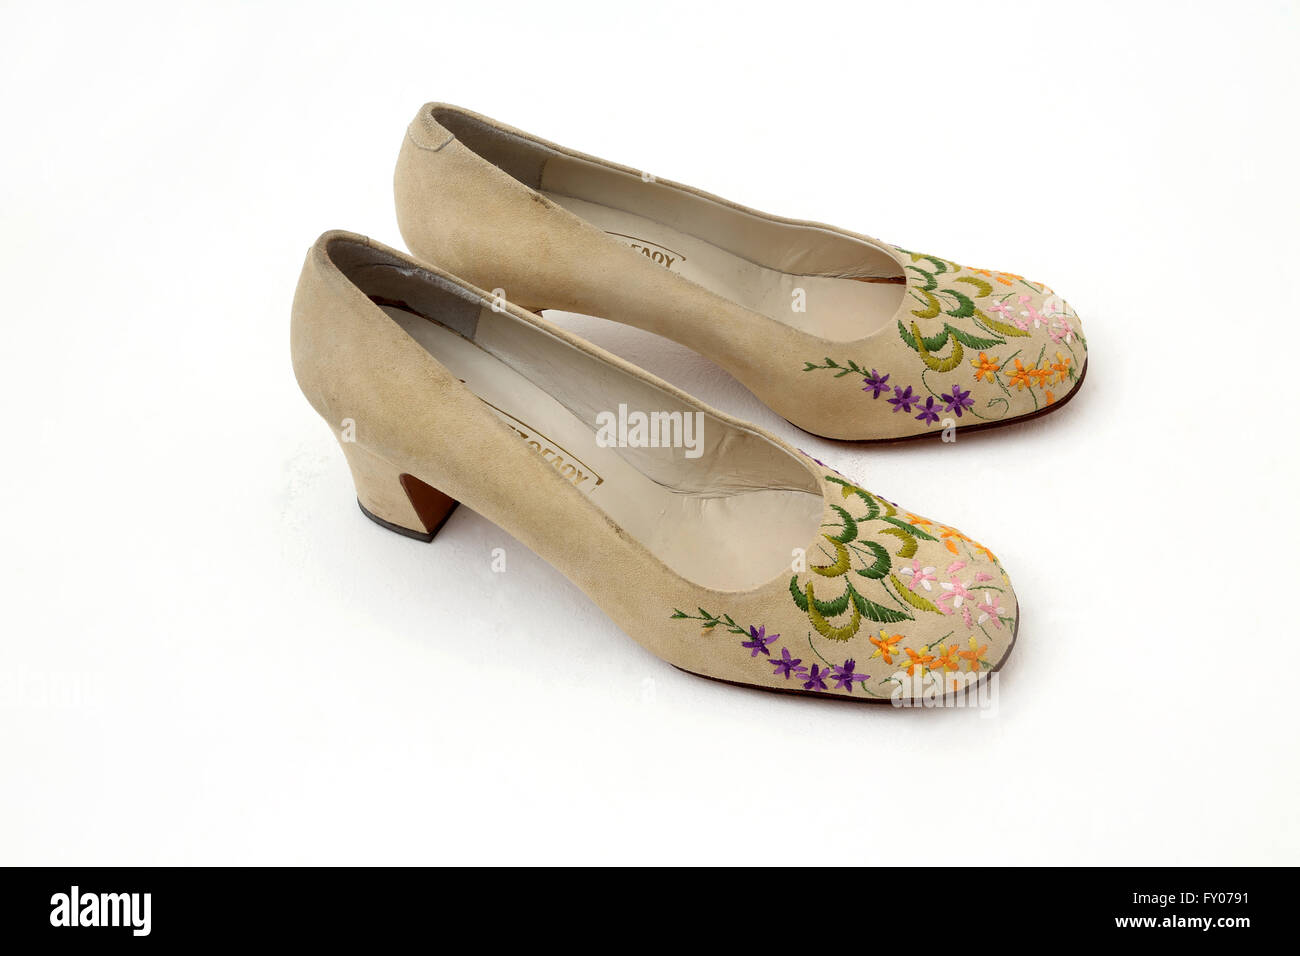 Una coppia di pelle scamosciata tacco alto scarpe con ricami floreali Foto Stock